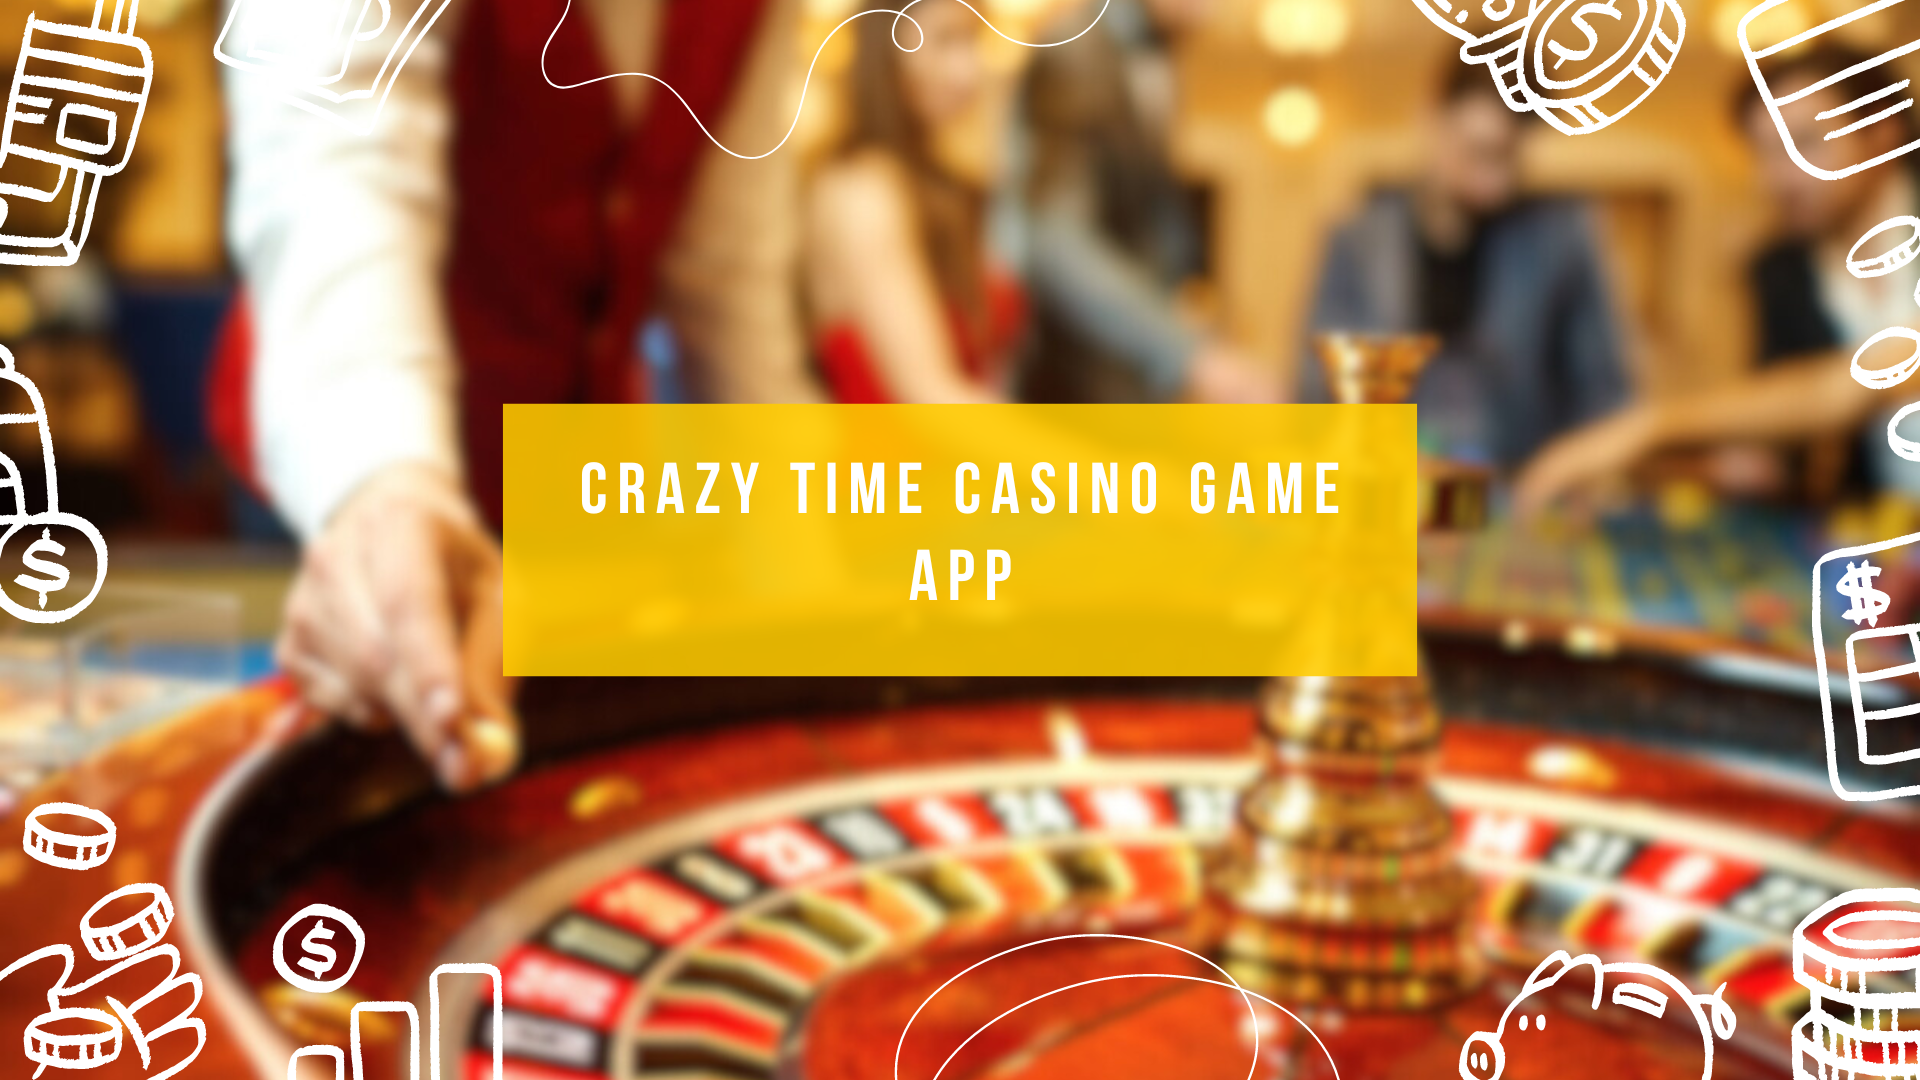 Crazy Time Casino Game App